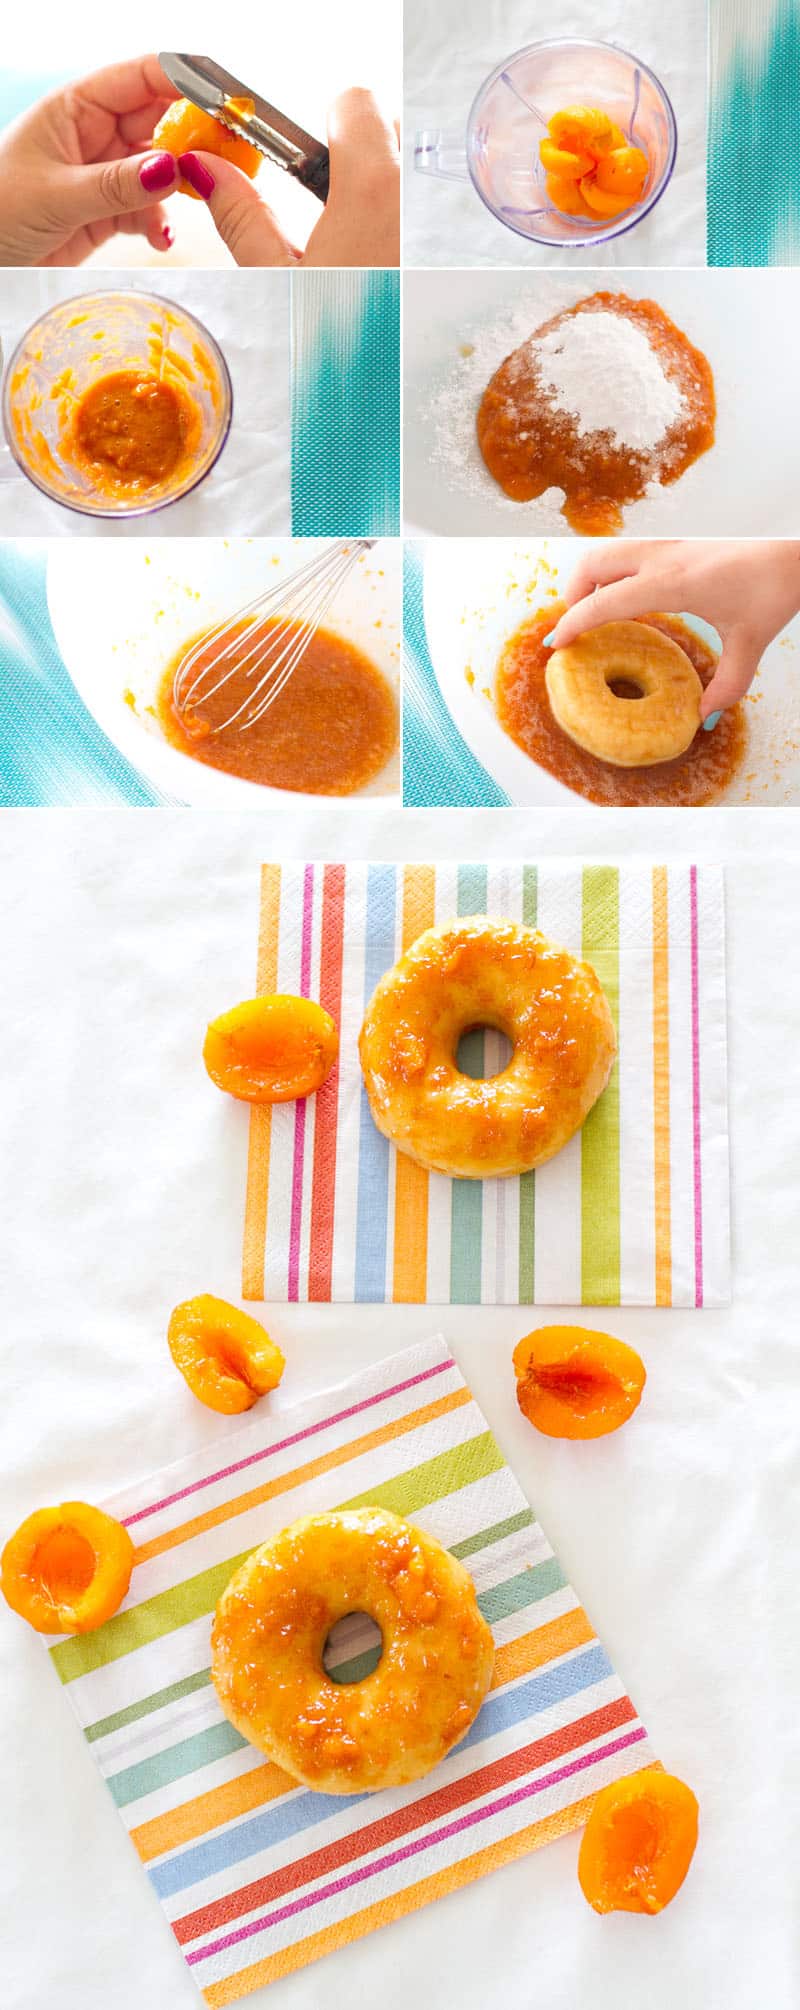 Apricot Donut Glaze Instructions